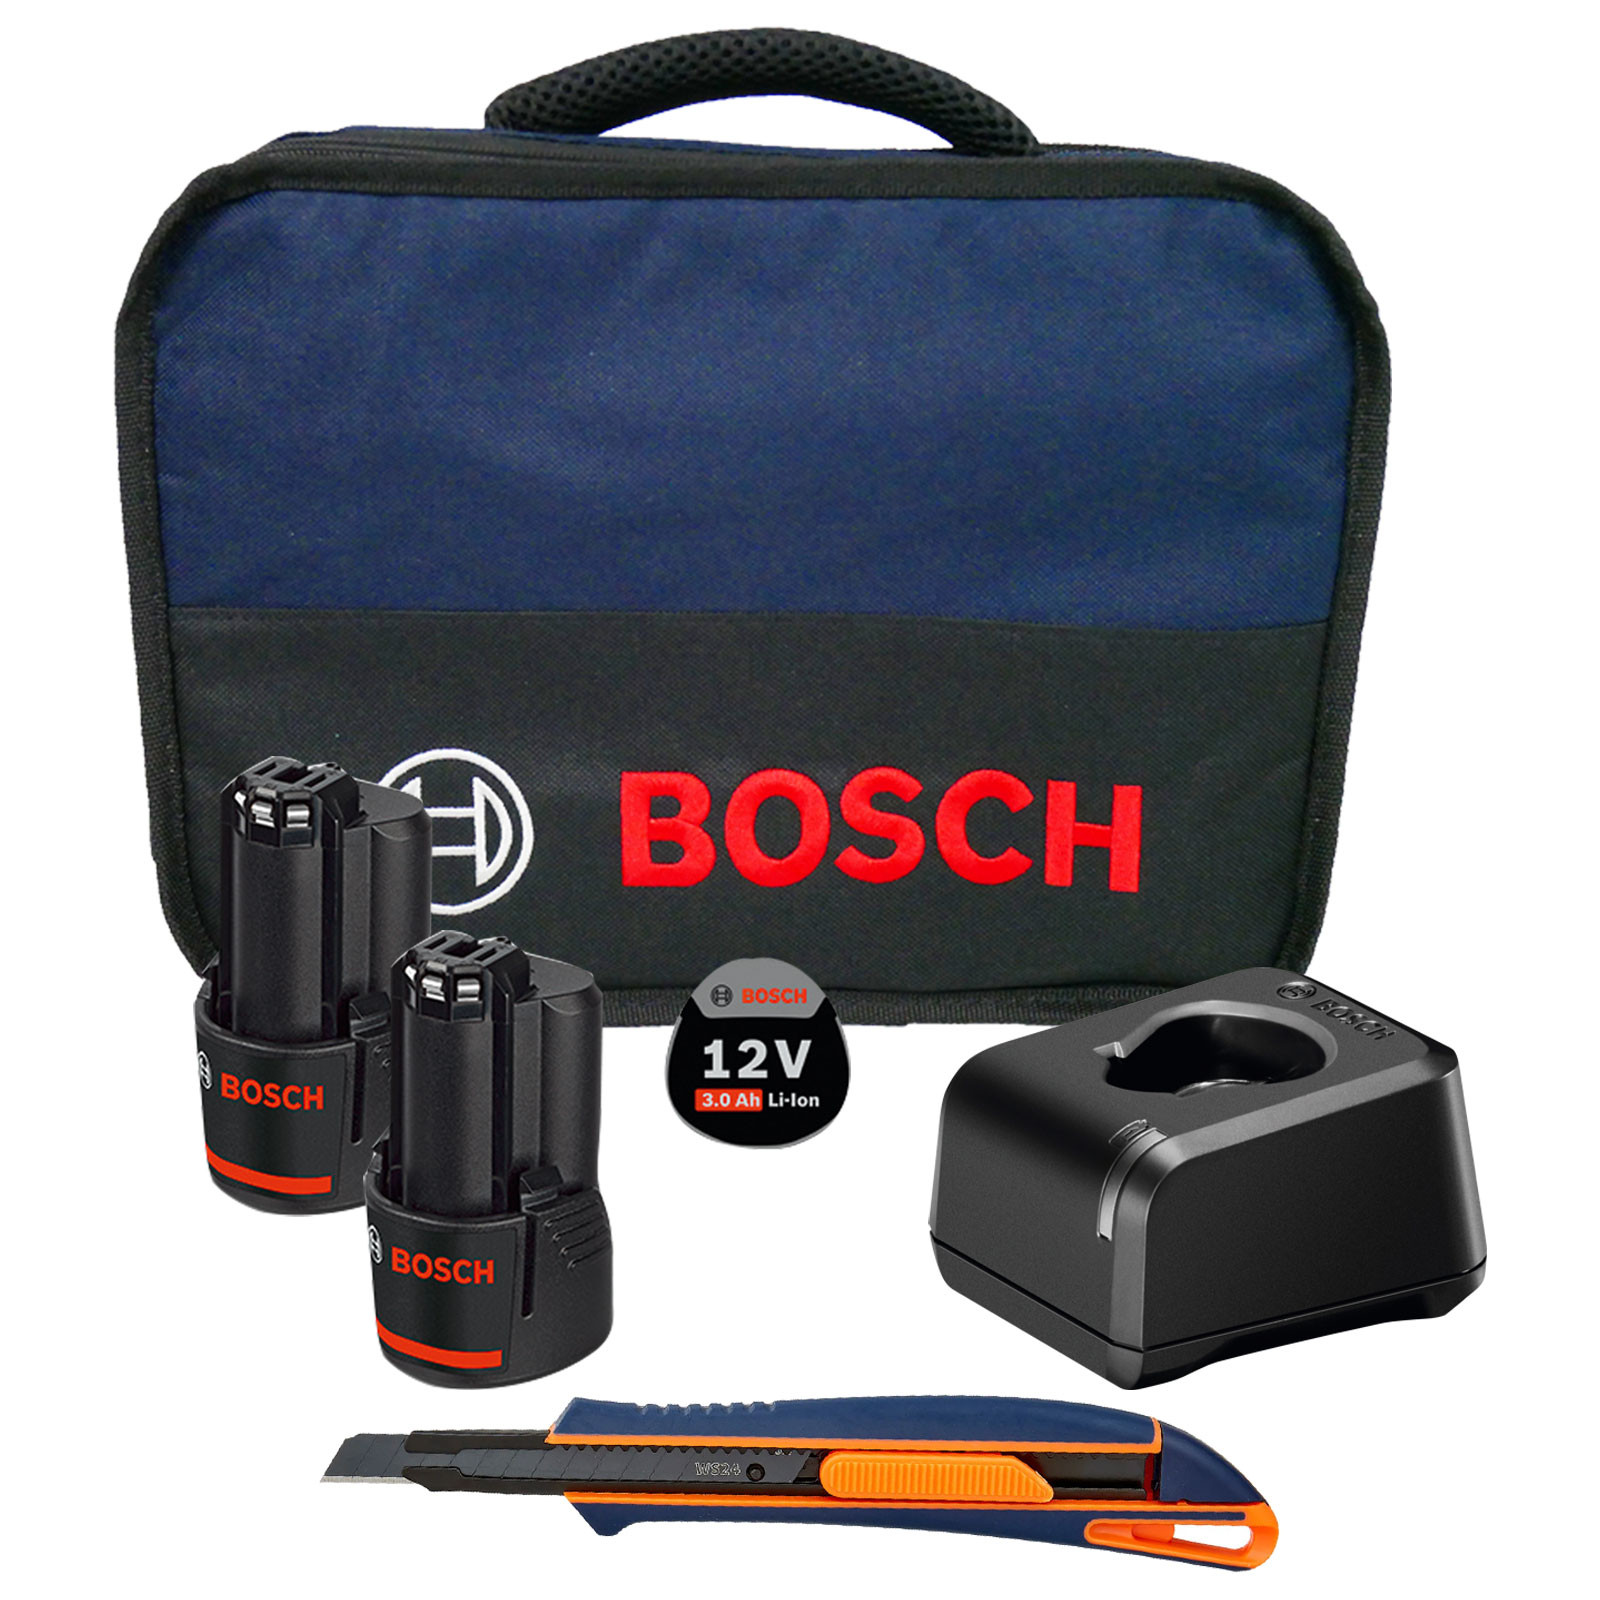 Bosch Starter-Set 12V-20 3,0 Softbag Akku Ah Ladegerät inkl. + Cuttermesser bei / WS24 im 9 Werkzeugstore24 GAL mm 12V 2x